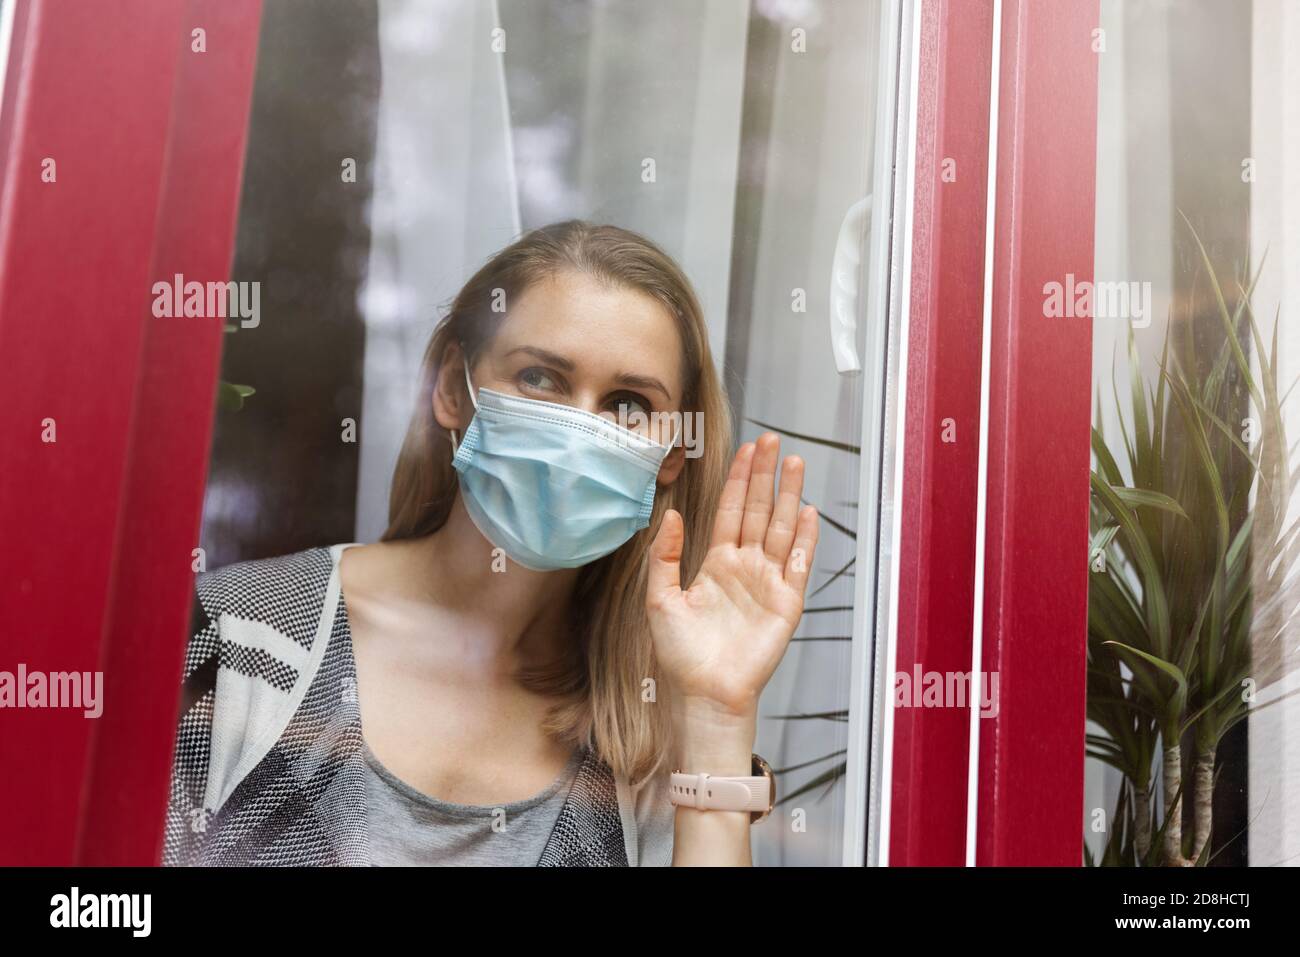 isolement à domicile et quarantaine - femme avec masque médical vue à travers la fenêtre Banque D'Images